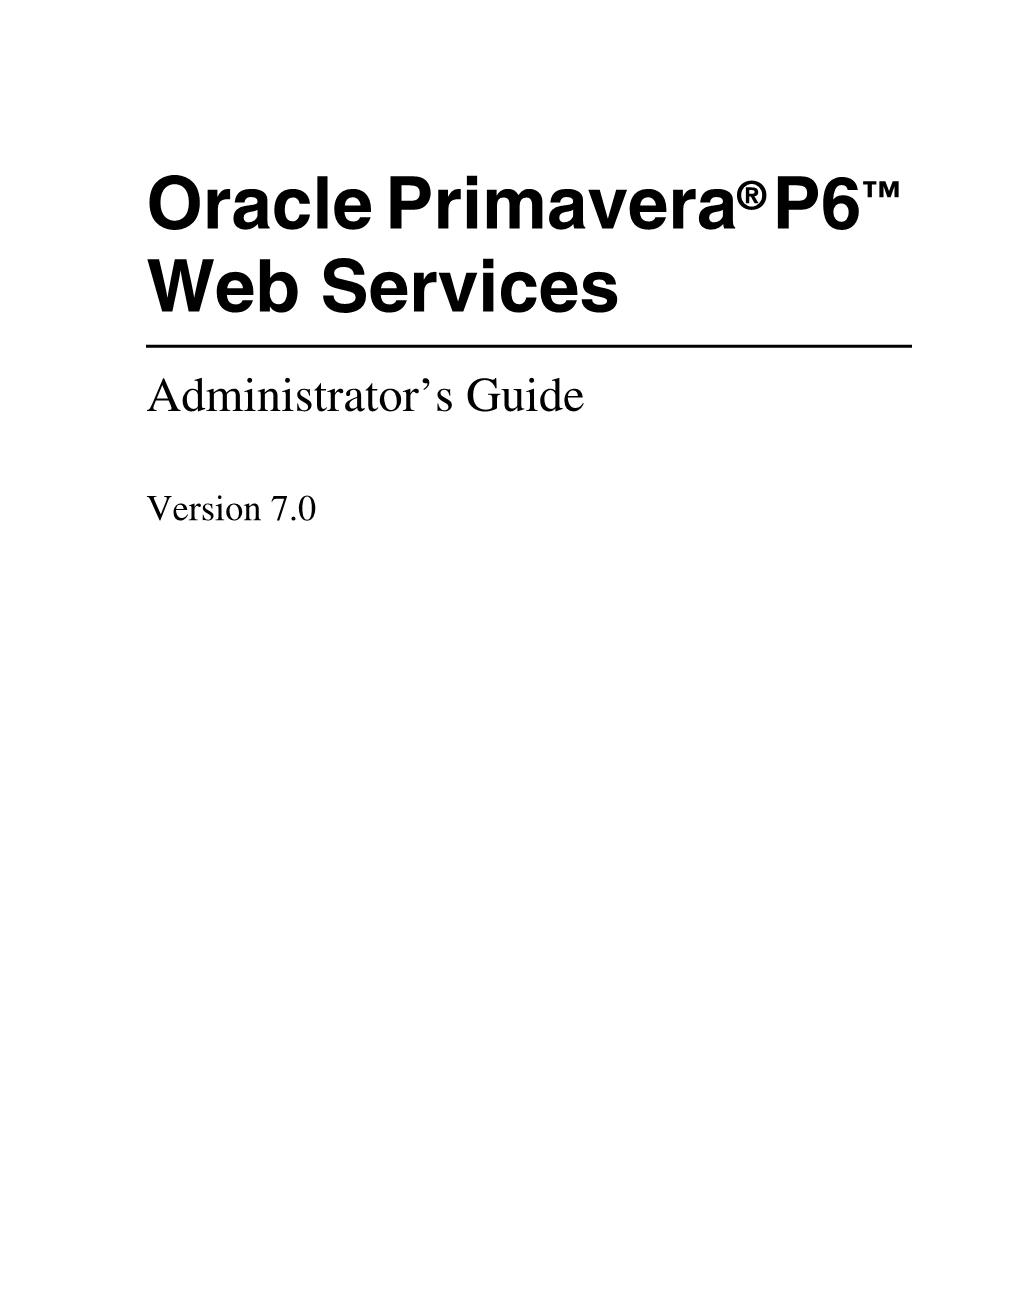 Oracle Primavera P6 Web Services Administrator's Guide